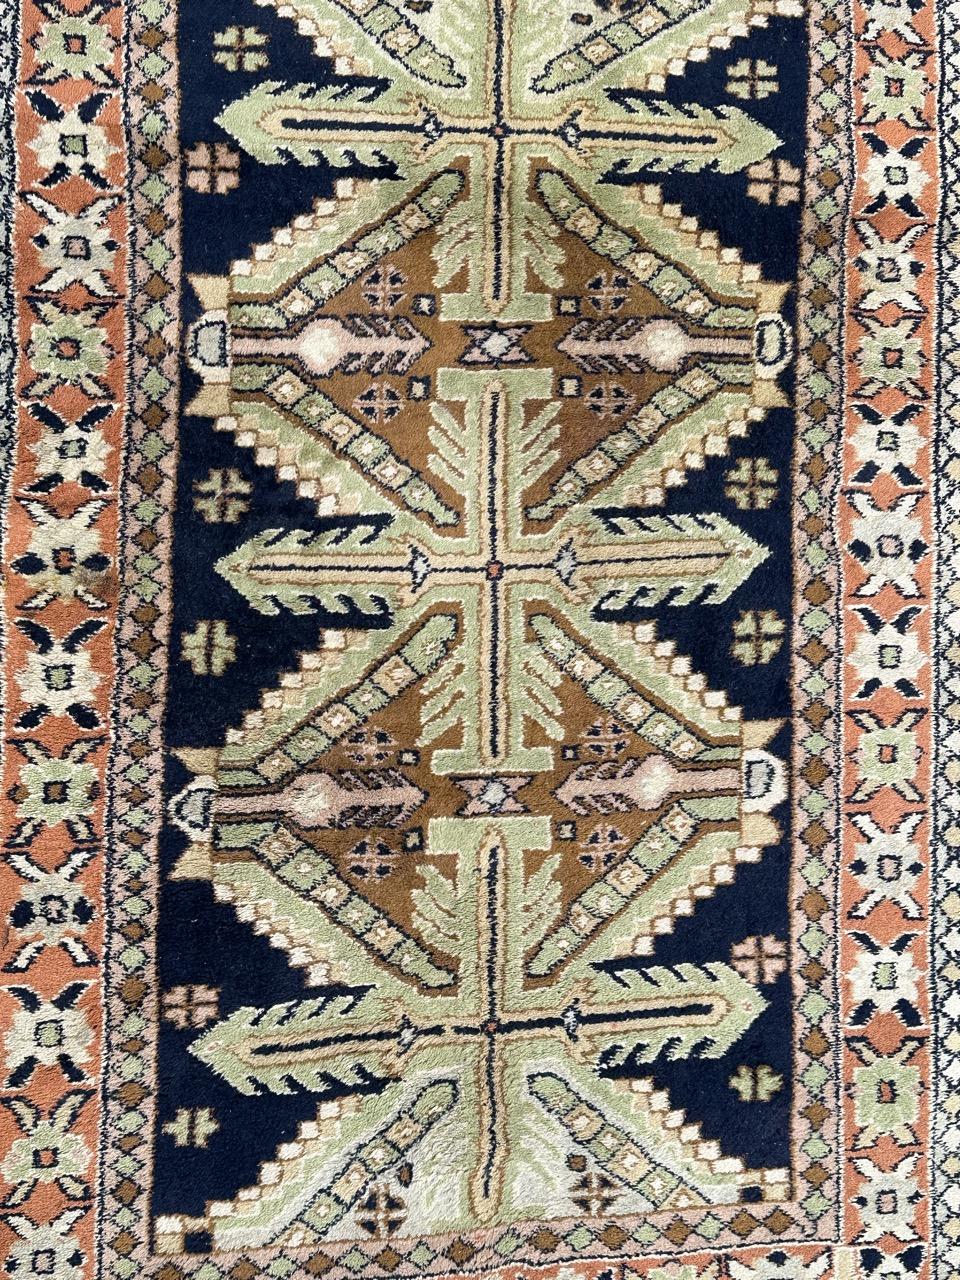 Hübscher türkisch-anatolischer Teppich aus der Mitte des Jahrhunderts mit schönem geometrischem kaukasischem Muster und schönen Farben mit dunkelblauem Feld und grünem, braunem und rosa Muster, sowie einer orangefarbenen Feldumrandung. Vollständig